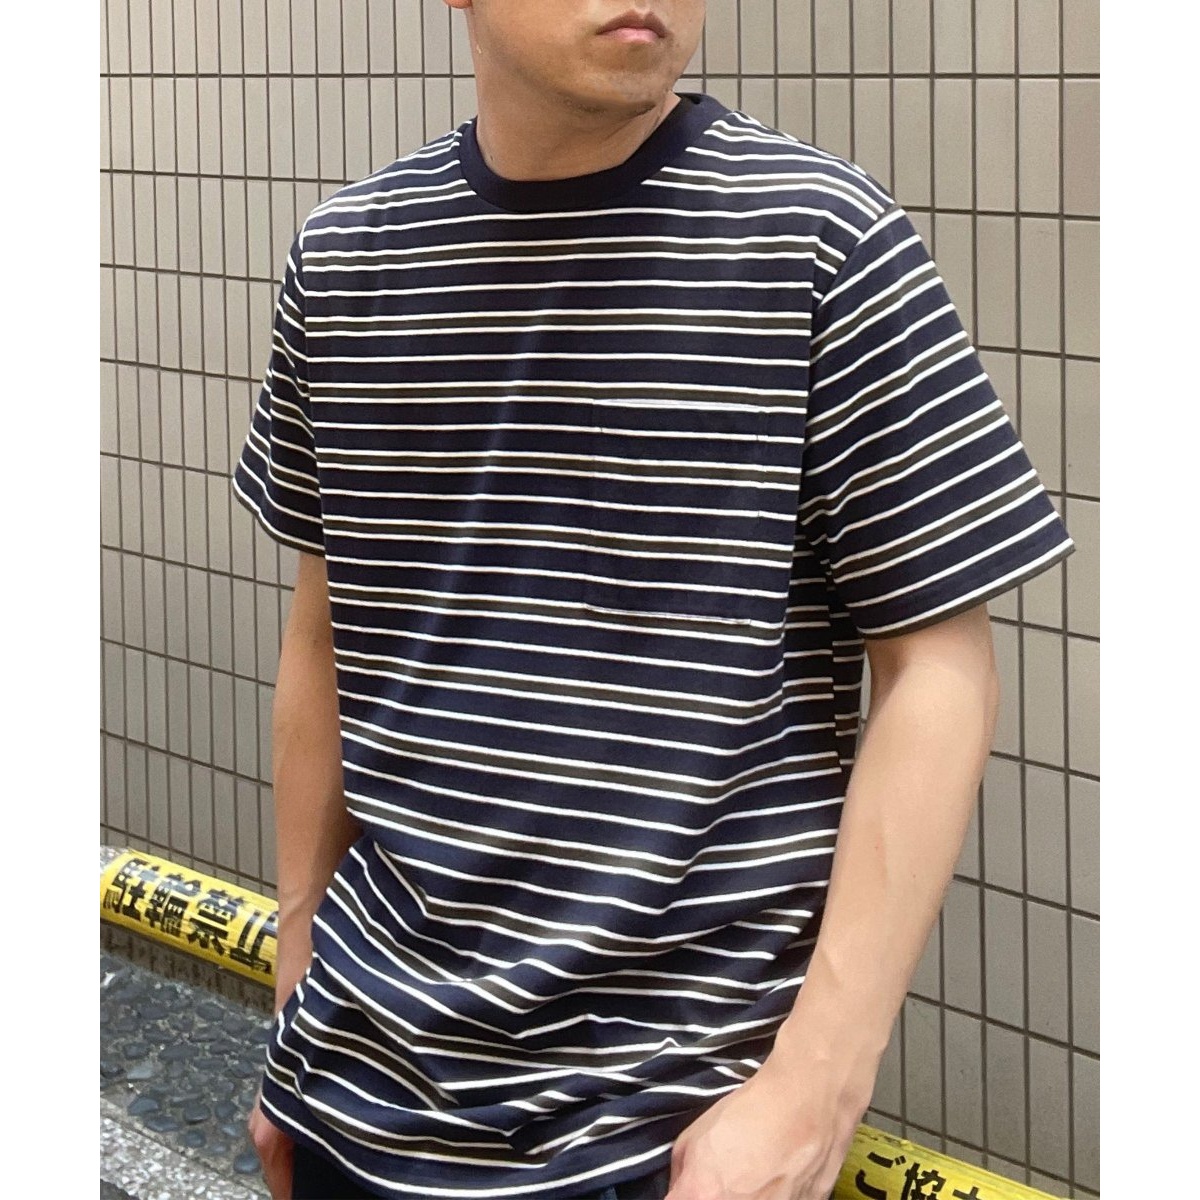 ポケ付きボーダーTシャツ | イッカ(ikka) | 11321104 | ファッション